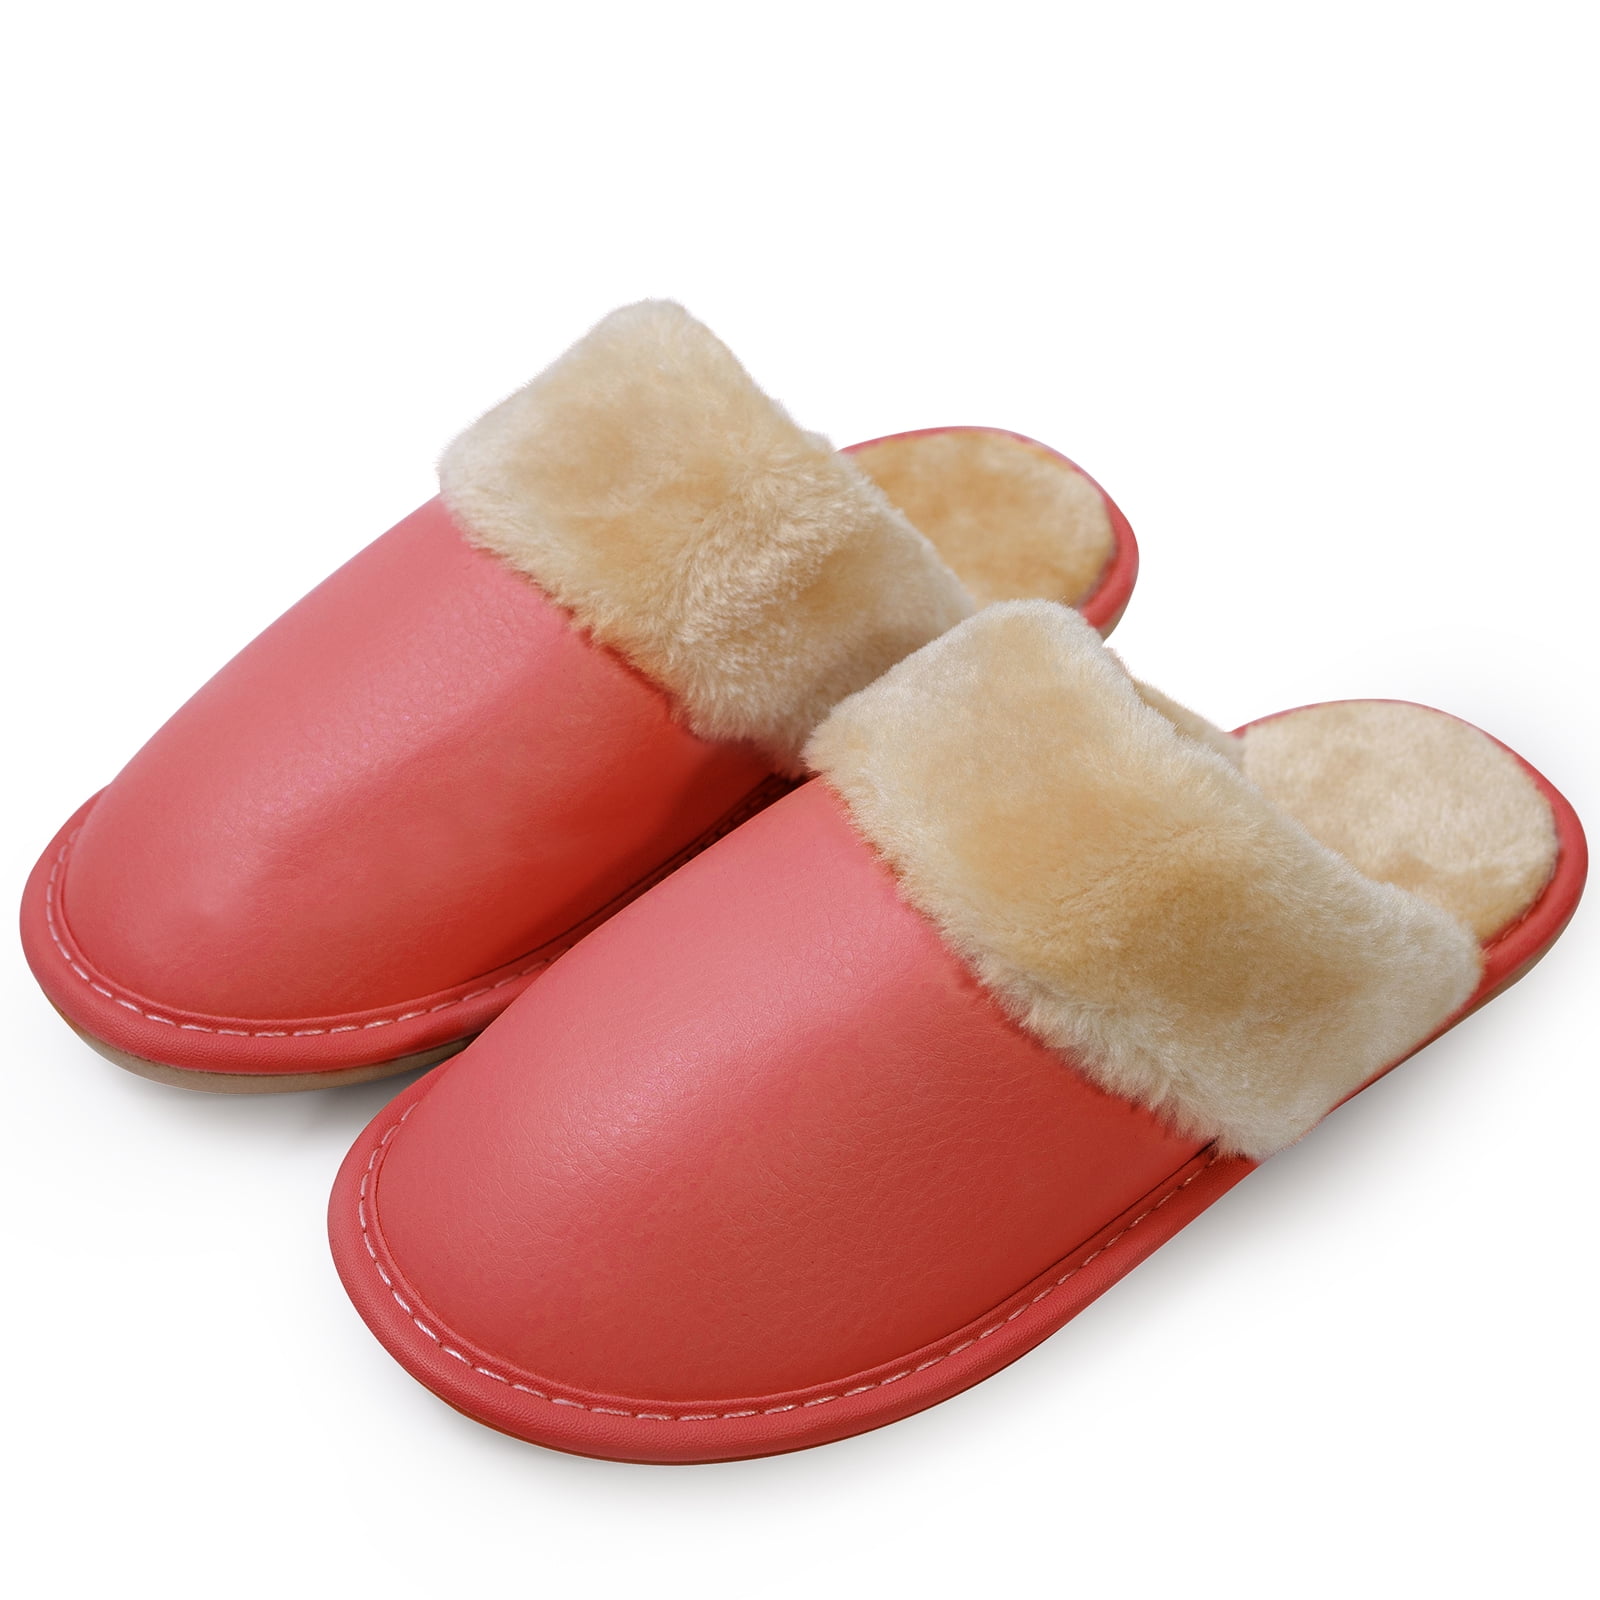 Puxowe Women Slides Faux Fur Fuzzy Slippers Indoor Outdoor Non